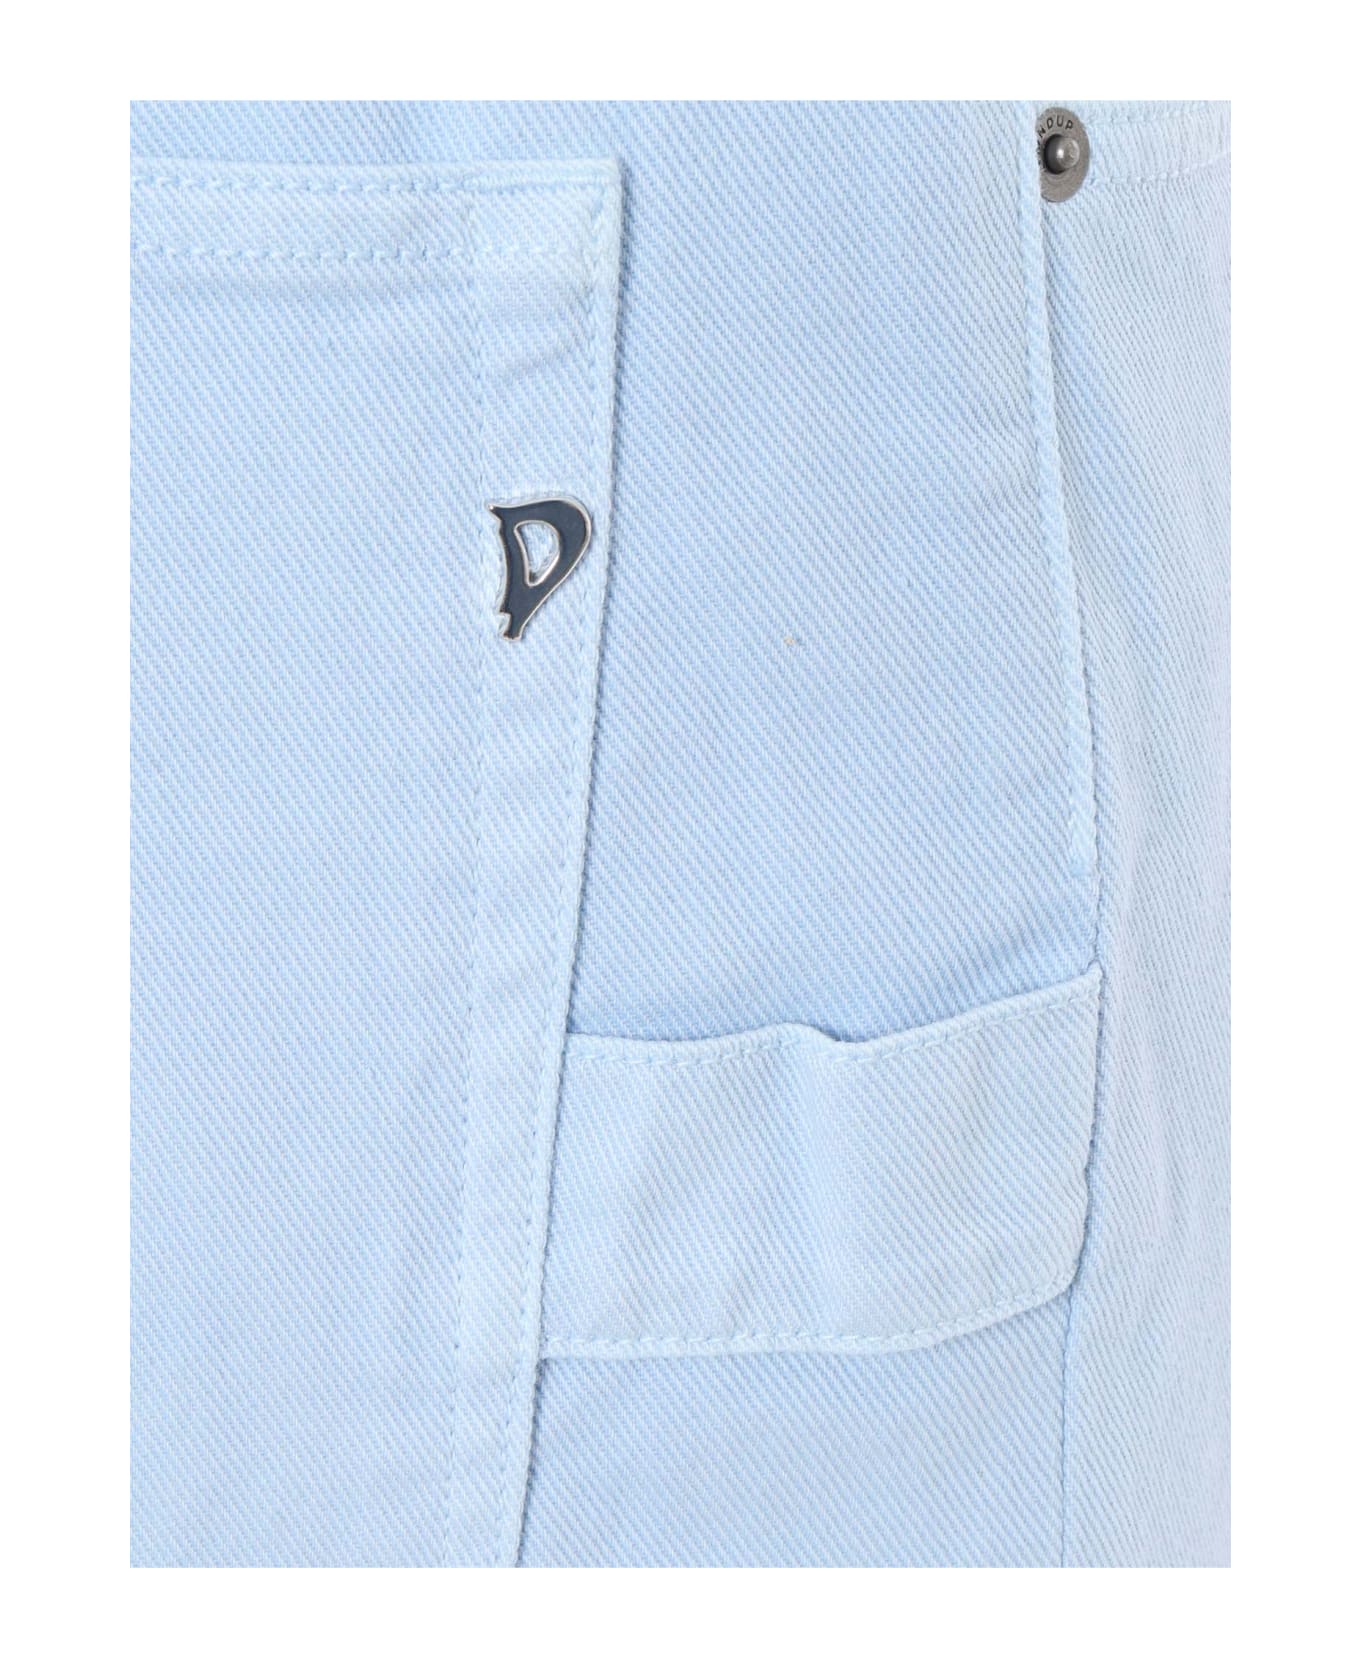 Dondup High-waisted Light Blue Jeans - LIGHT BLUE